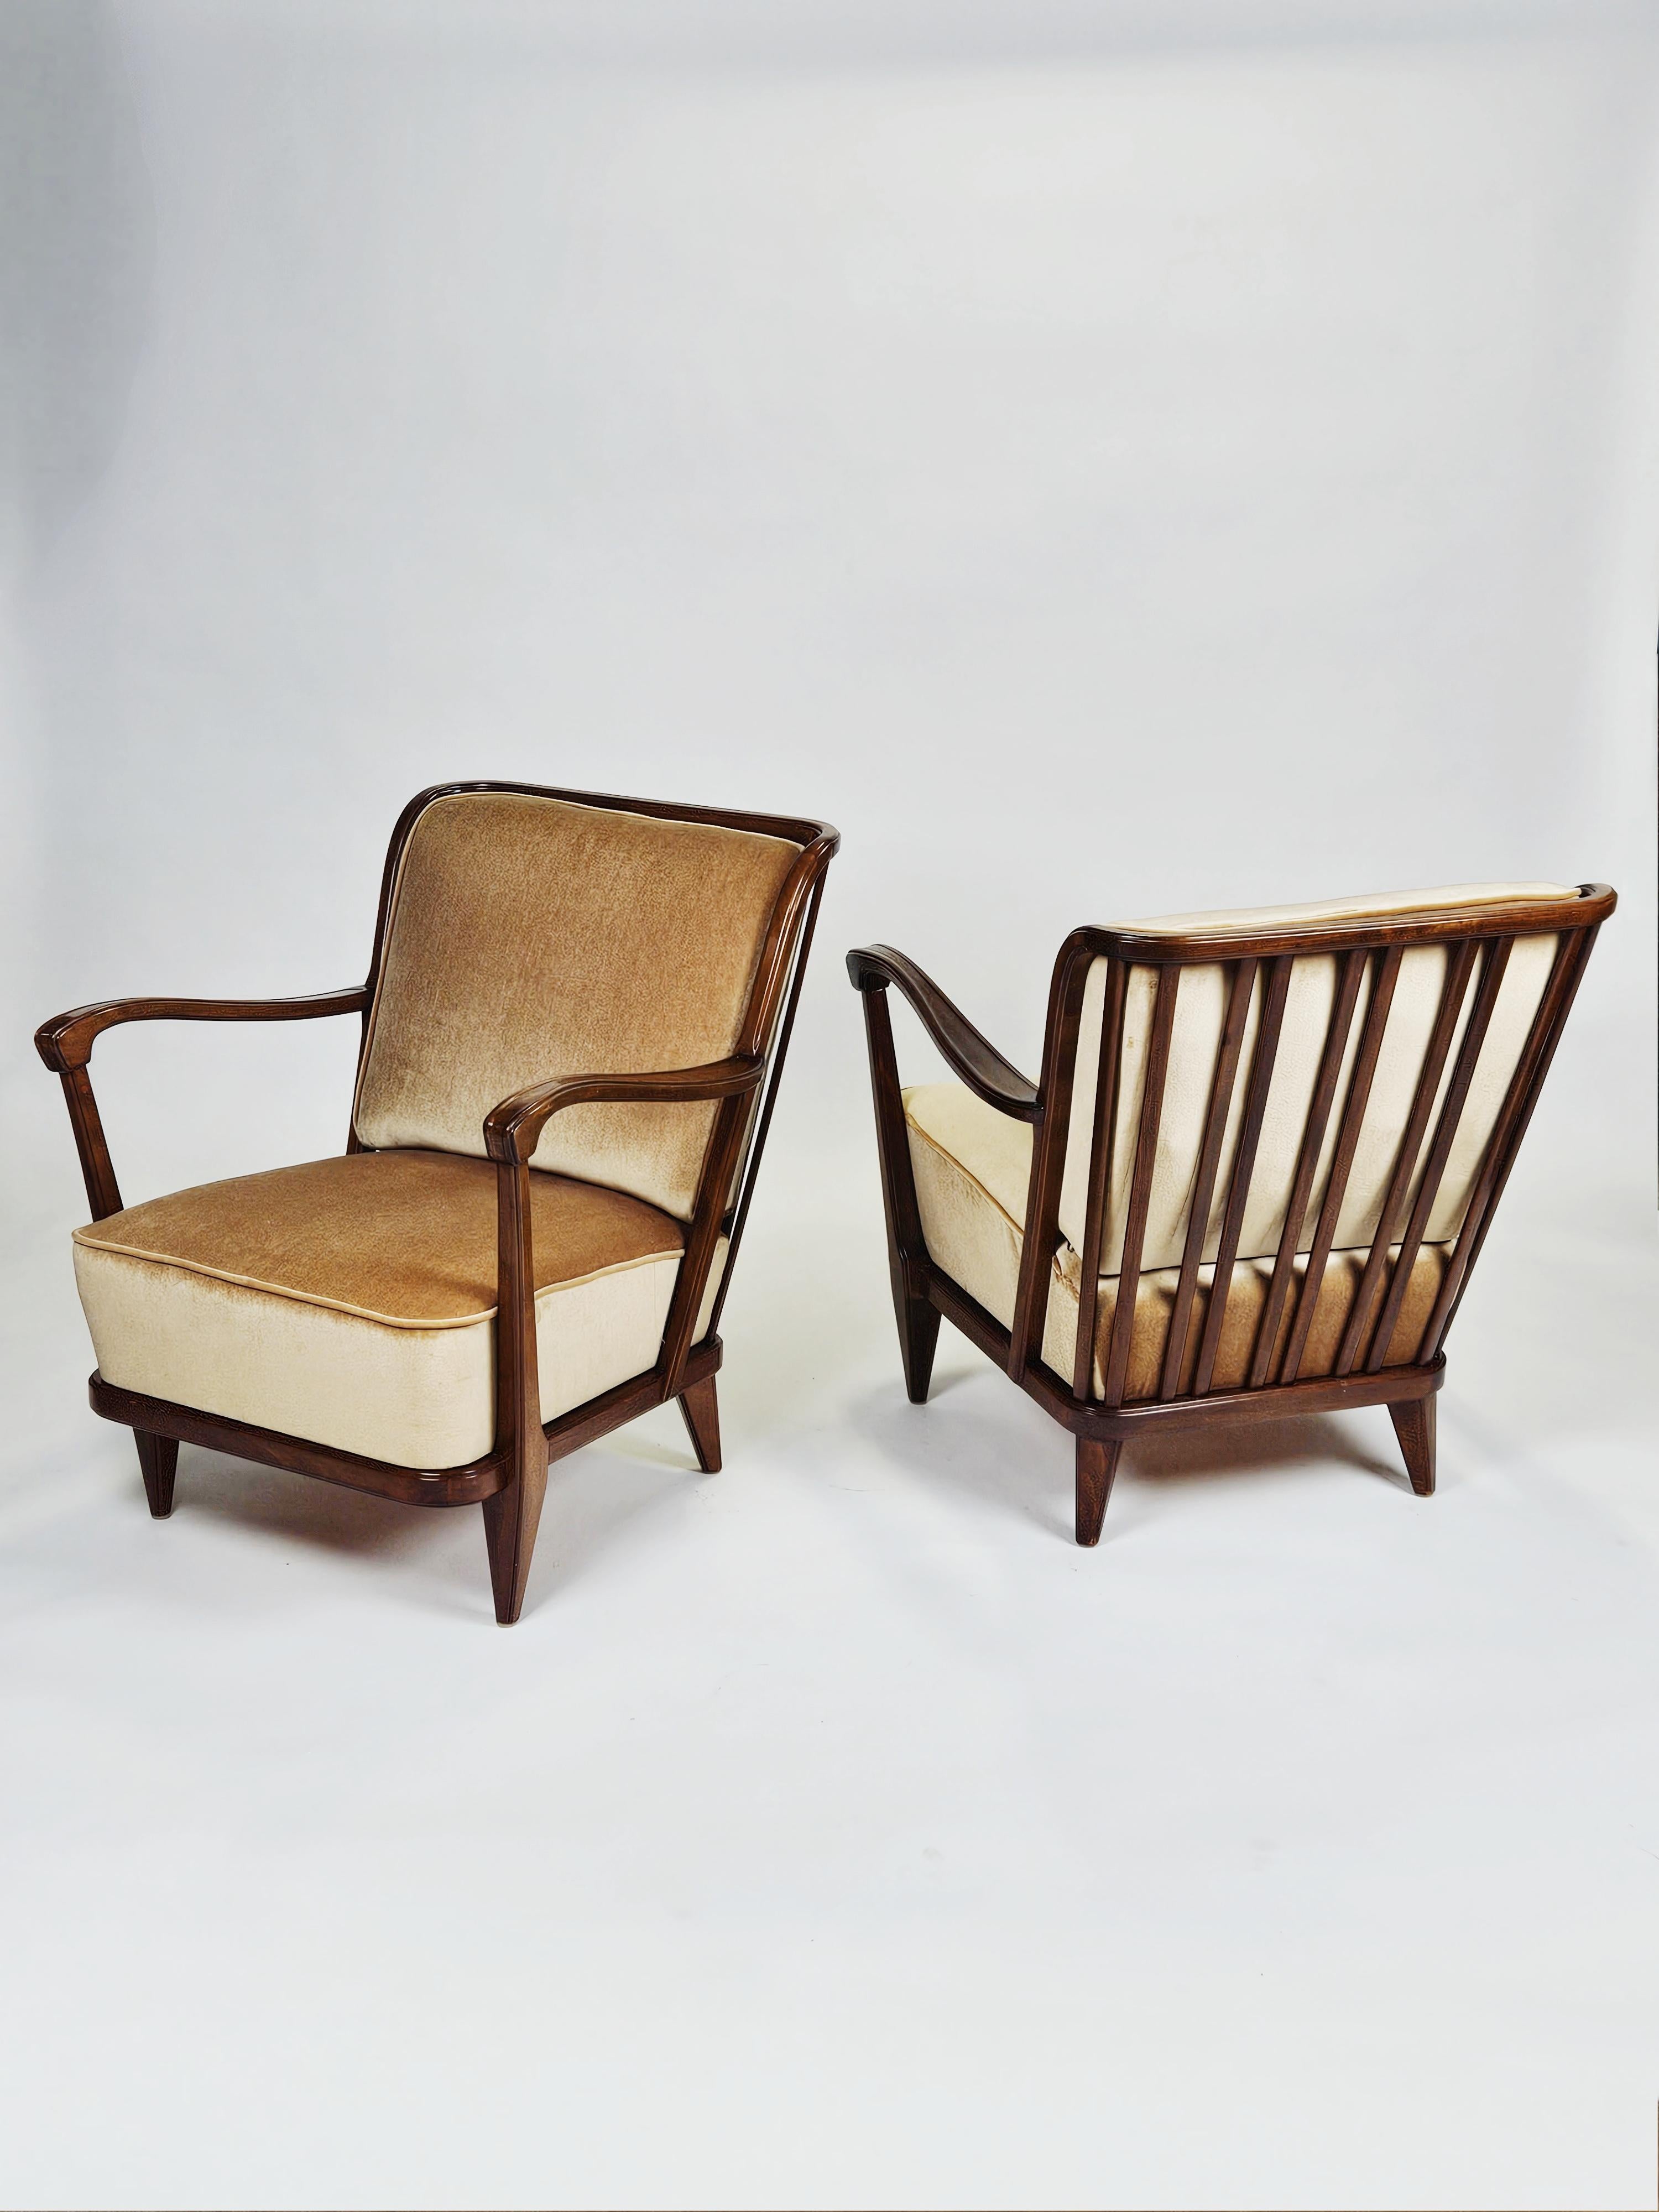 Elegante Sessel, entworfen von Svante Skogh und hergestellt von AB Förenade Möbelfabrikerna Linköping, Schweden, in den 1950er Jahren. 

Hergestellt aus Buche mit noch gut erhaltenem Originalstoff. 